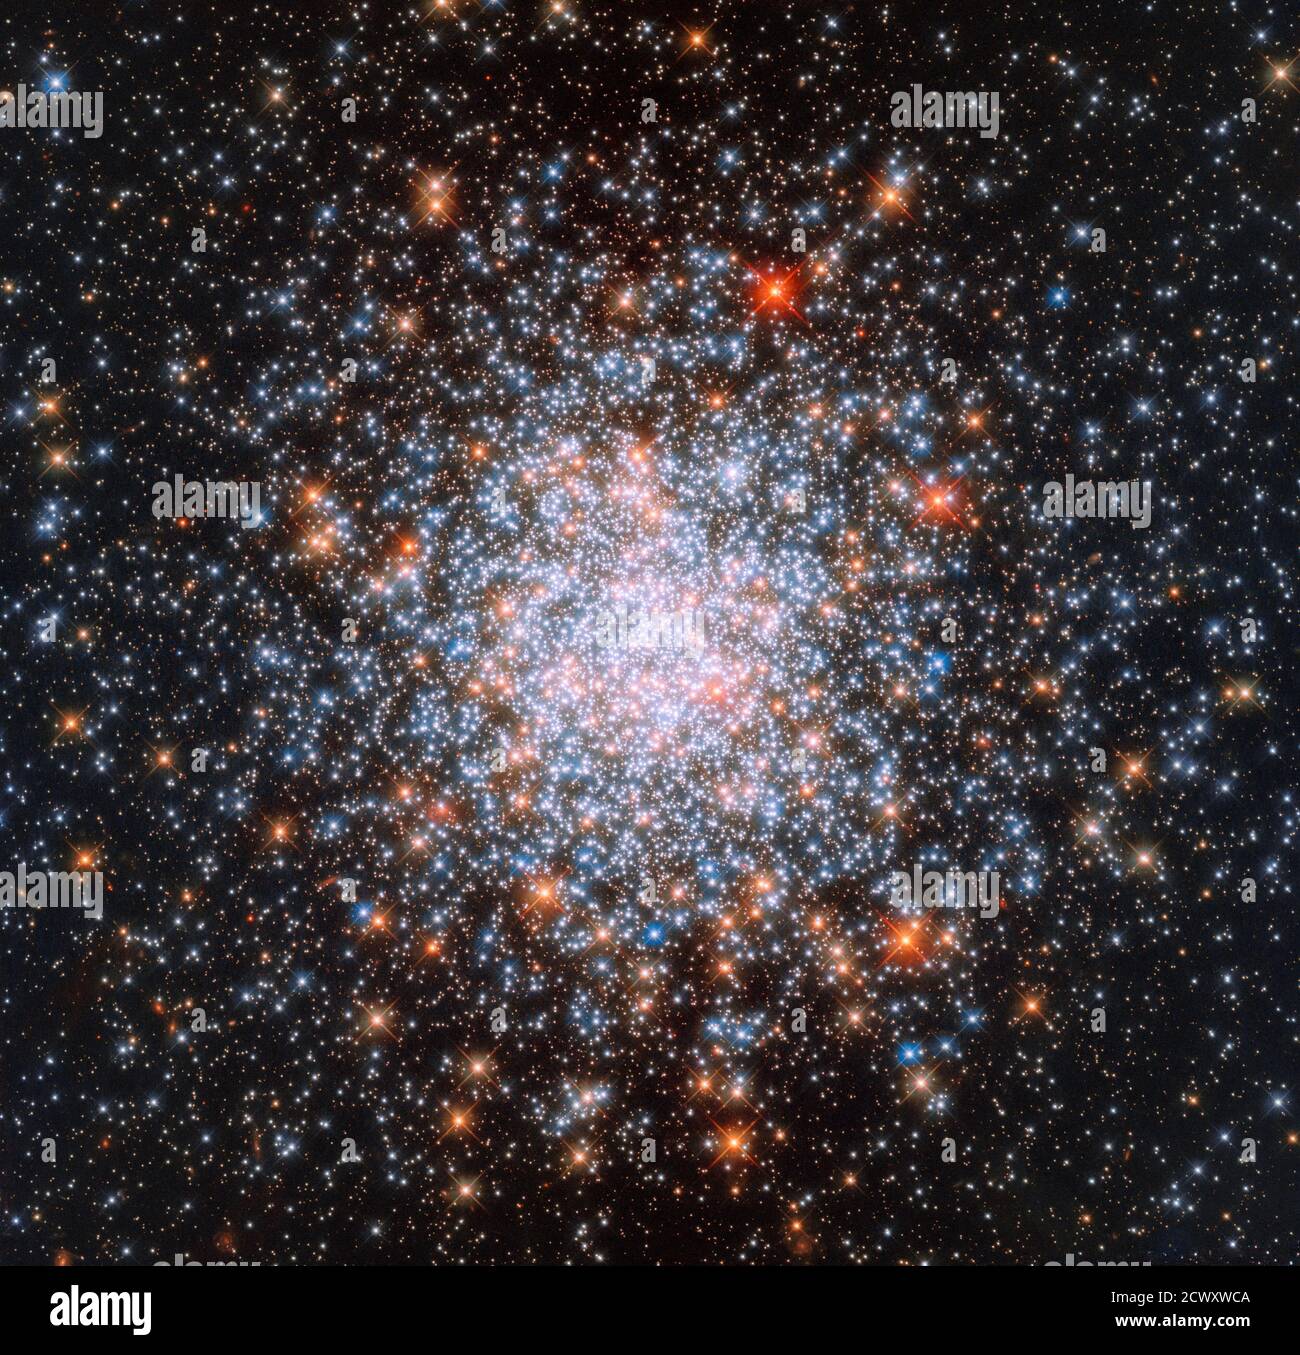 El Hubble captura estrellas a través de generaciones generalmente, los grupos de estrellas globulares tienden a tener estrellas realmente viejas, pero @NASAHubble encontró una cerca de la vía Láctea con una profusión de estrellas más jóvenes. Llamado NGC 1866, este cúmulo se encuentra en los mismos bordes de la Gran Nube Magallanes, una pequeña galaxia ubicada cerca de la vía Láctea. El cúmulo fue descubierto en 1826 por el astrónomo escocés James Dunlop, quien catalogó miles de estrellas y objetos de cielo profundo durante su carrera. NGC 1866 también está situado lo suficientemente cerca como para que sus estrellas puedan ser estudiadas individualmente - ninguna hazaña pequeña dada la mamut distancias invol Foto de stock